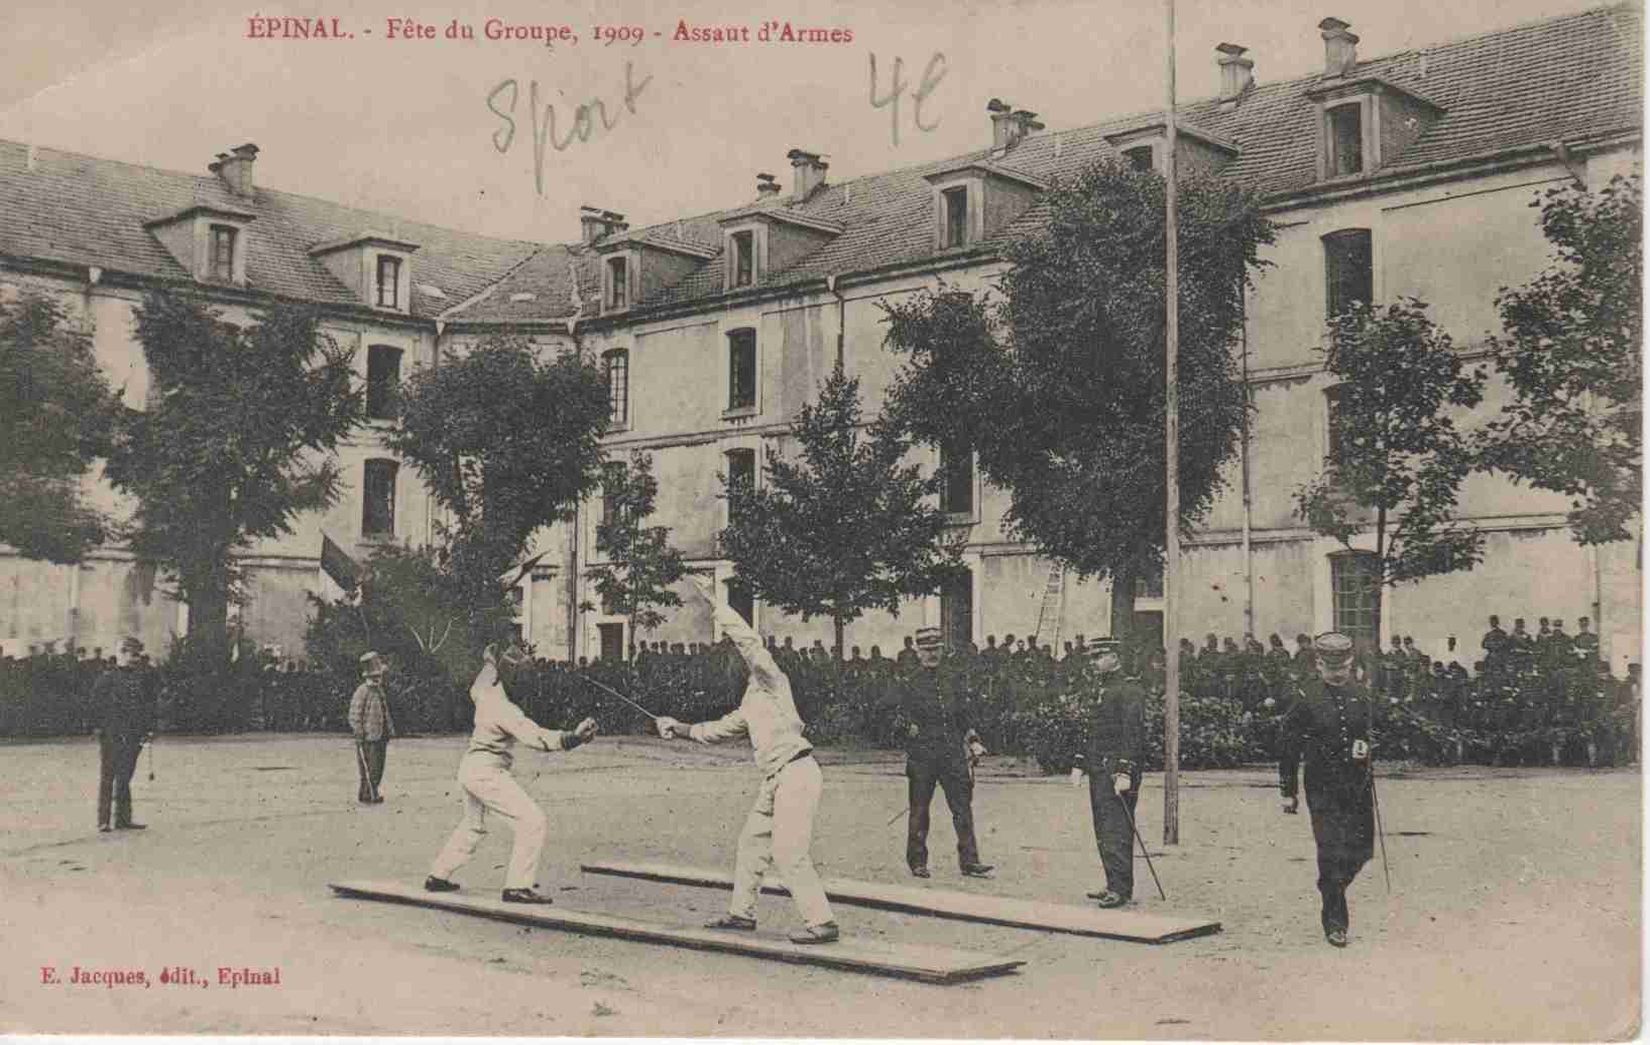 Epinal - Fête du Groupe 1909 - Assaut d'Armes